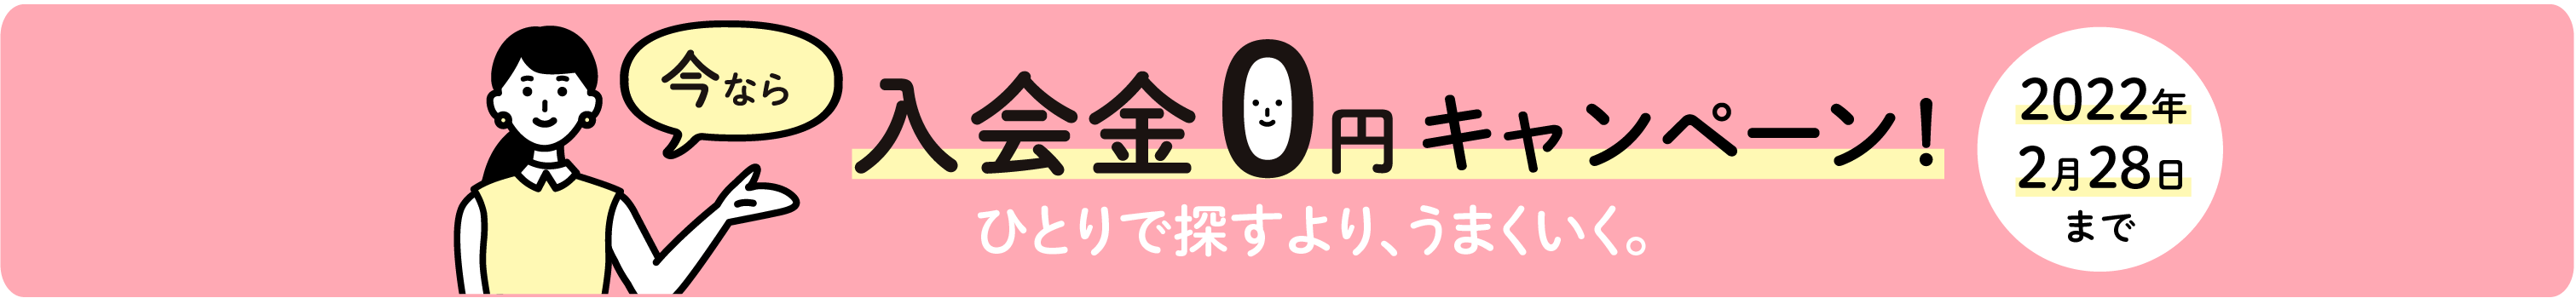 今なら 入会金0円キャンペーン！一人で探すよりうまくいく。2021年3月31日まで。